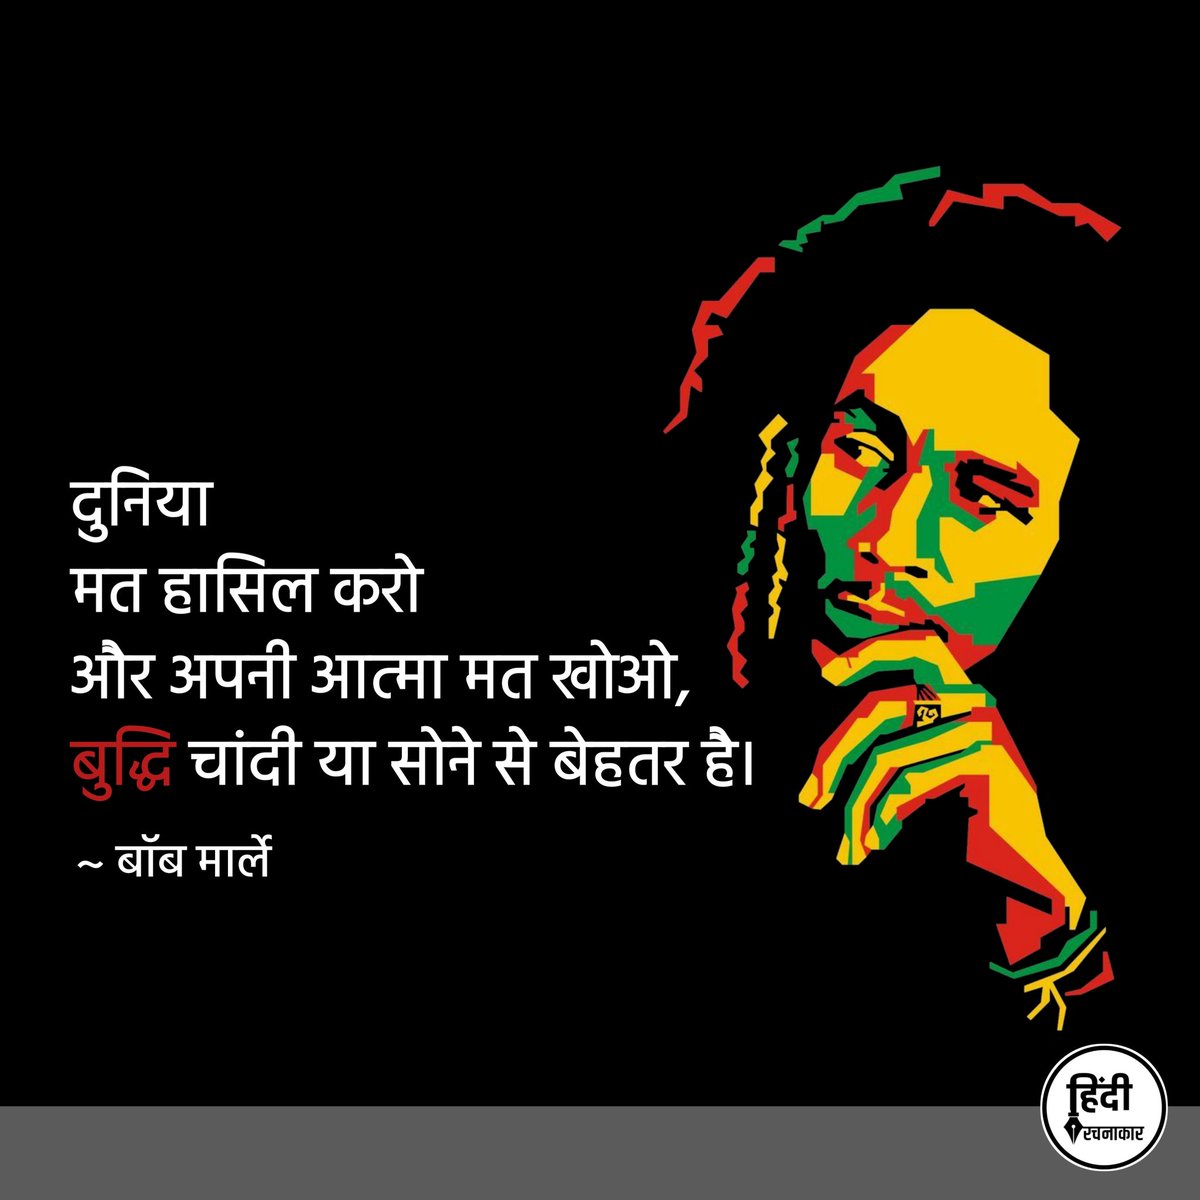 दुनिया मत हासिल करो और अपनी आत्मा मत खोओ, बुद्धि चांदी या सोने से बेहतर है।

~ बॉब मार्ले

#bobmarley 
#positivequotes
#hindirachnakaar